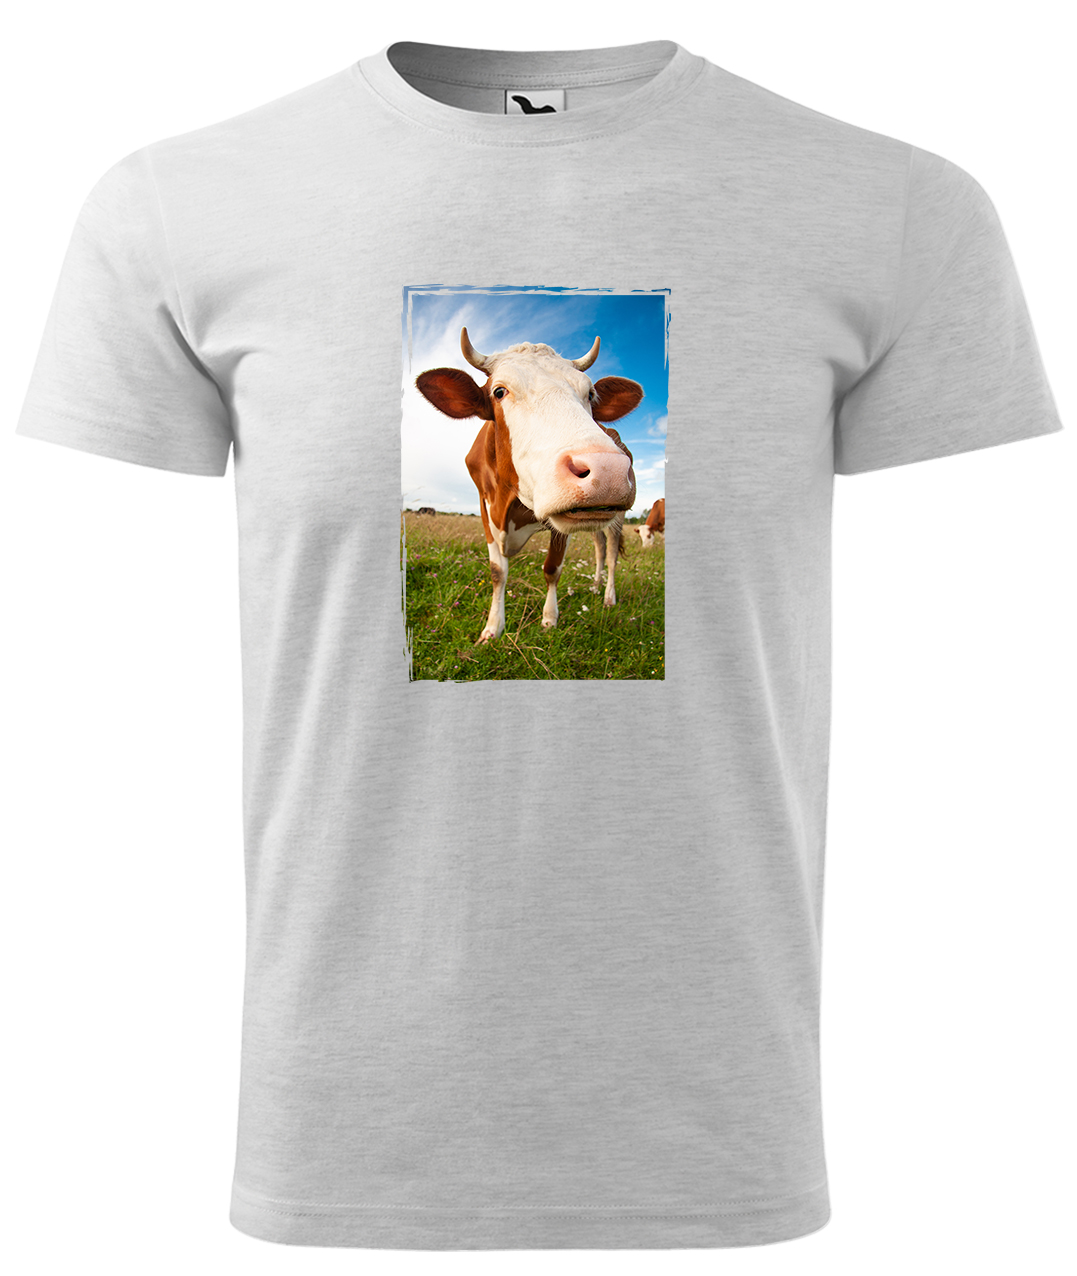 Dětské tričko s krávou - Na pastvě Velikost: 8 let / 134 cm, Barva: Světle šedý melír (03), Délka rukávu: Krátký rukáv